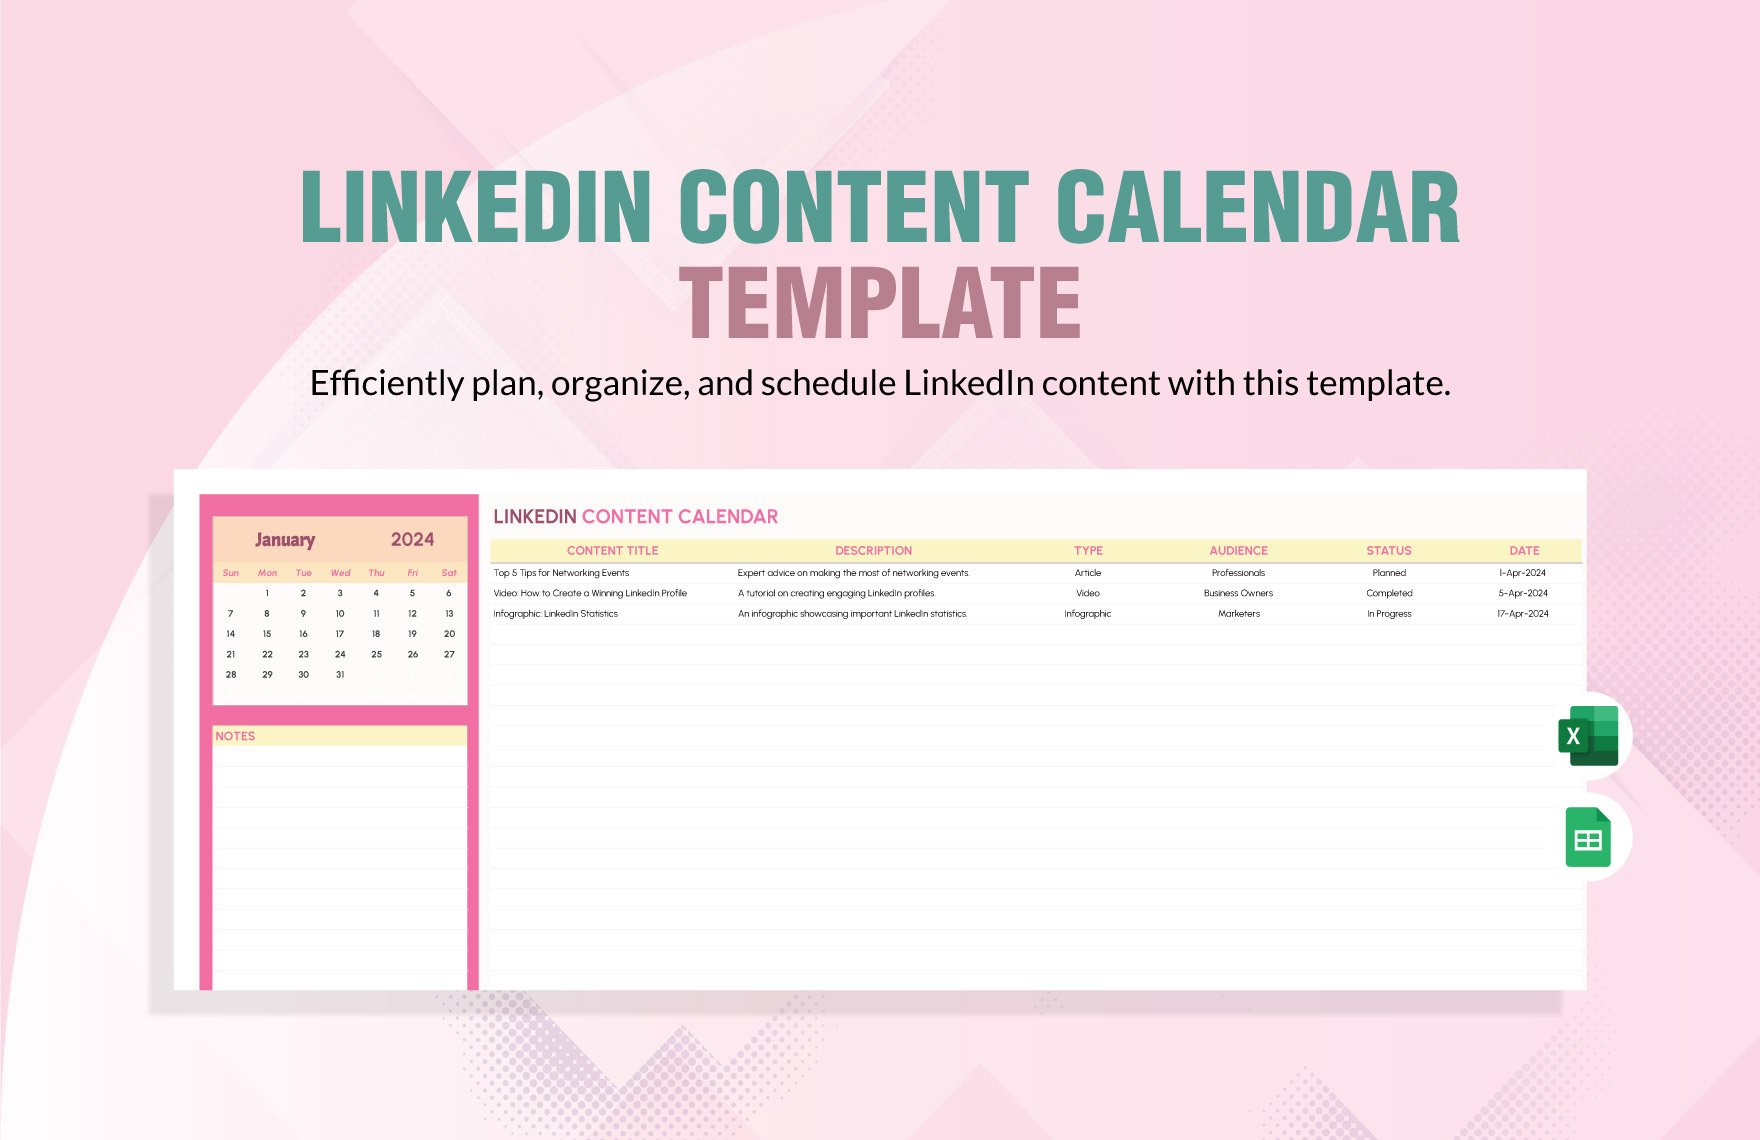 LinkedIn Content Calendar Template